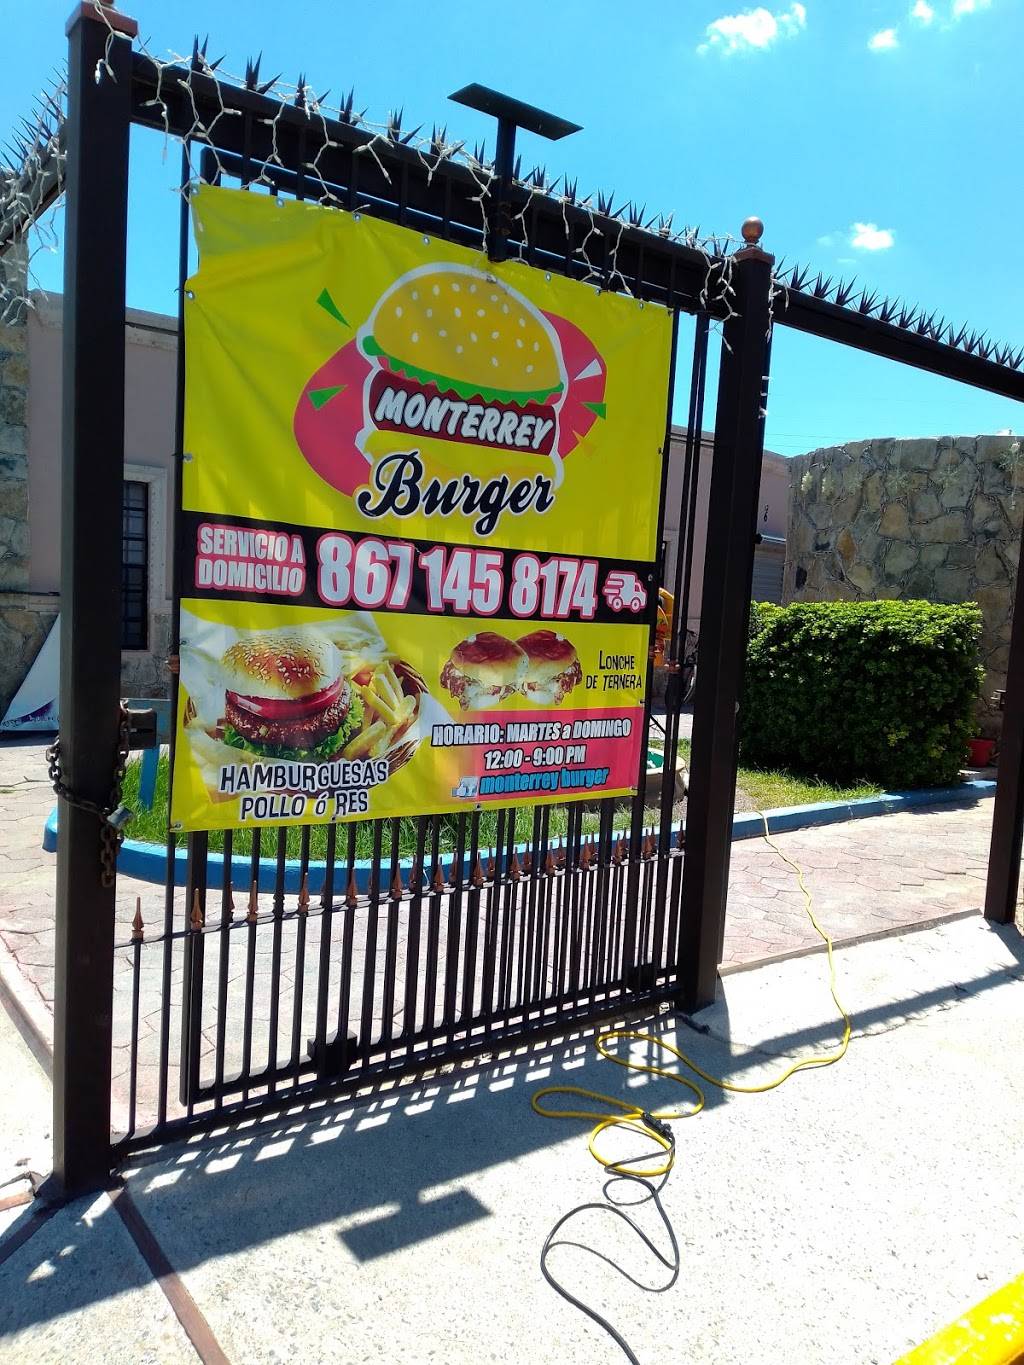 Monterrey burger | Prol Av Monterrey 6014, El Nogal, 88290 Nuevo Laredo, Tamps., Mexico | Phone: 867 145 8174